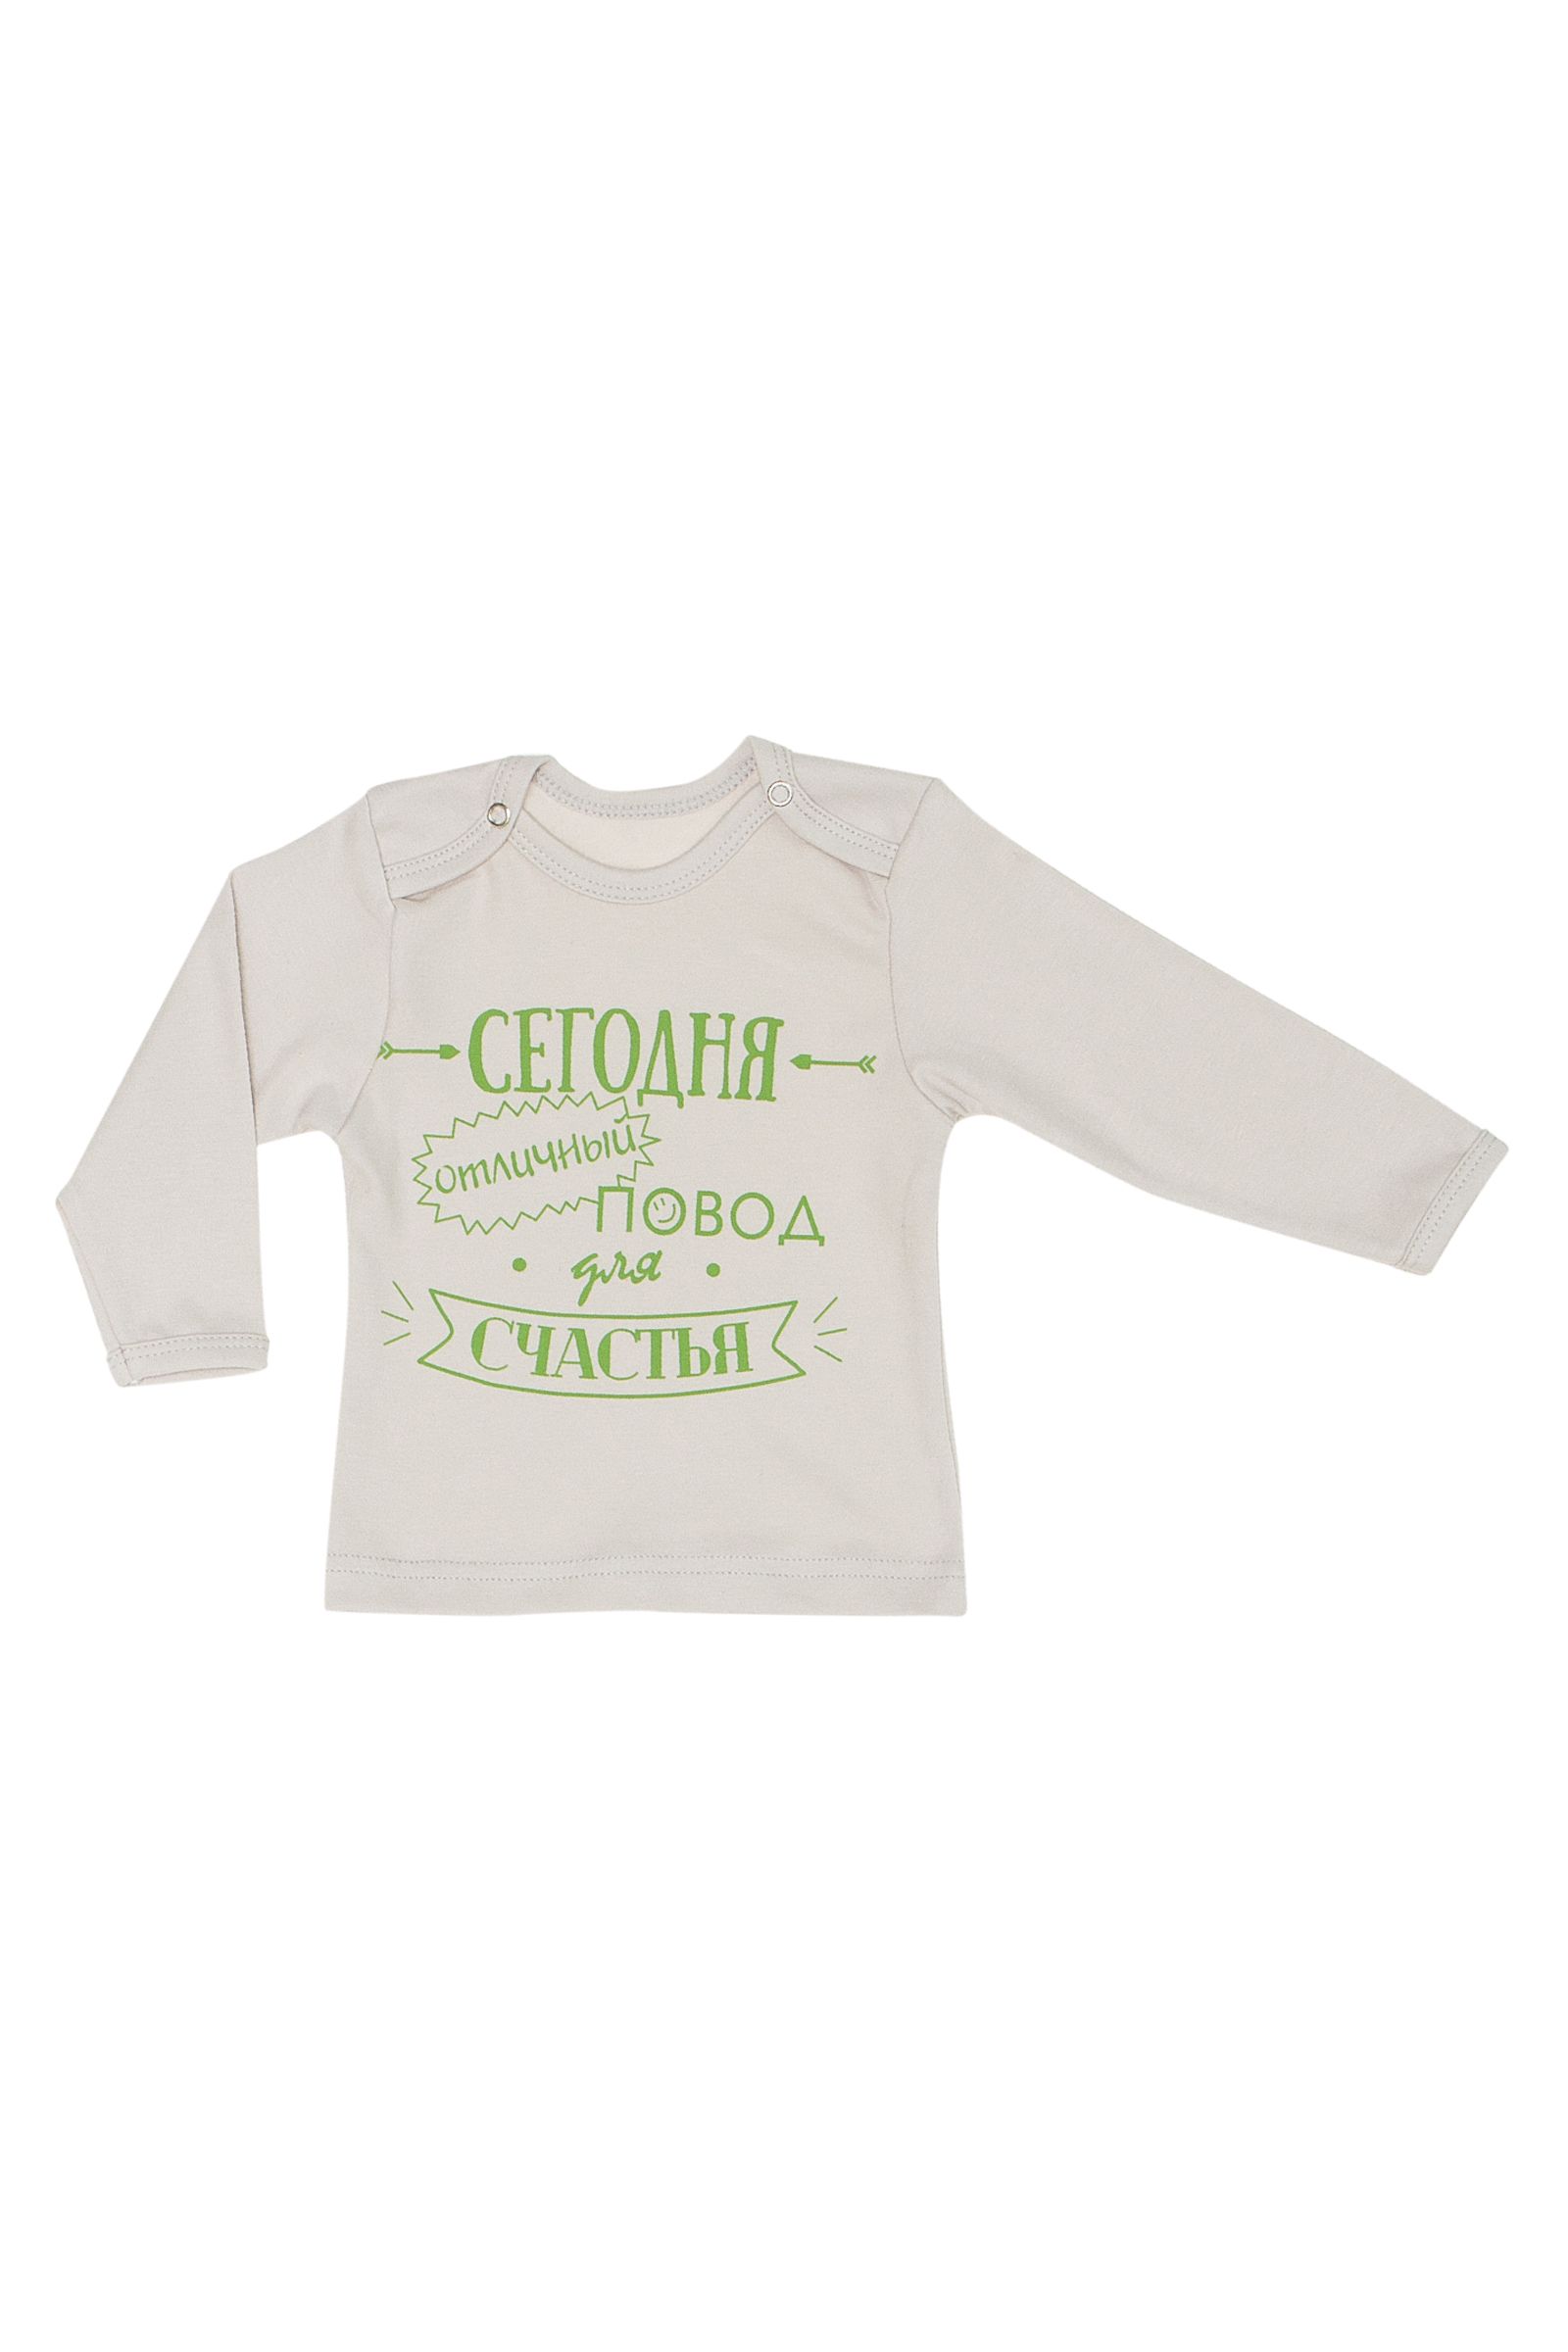 Лонгслив-РБ01-1727 оптом от производителя детской одежды 'Алёна'